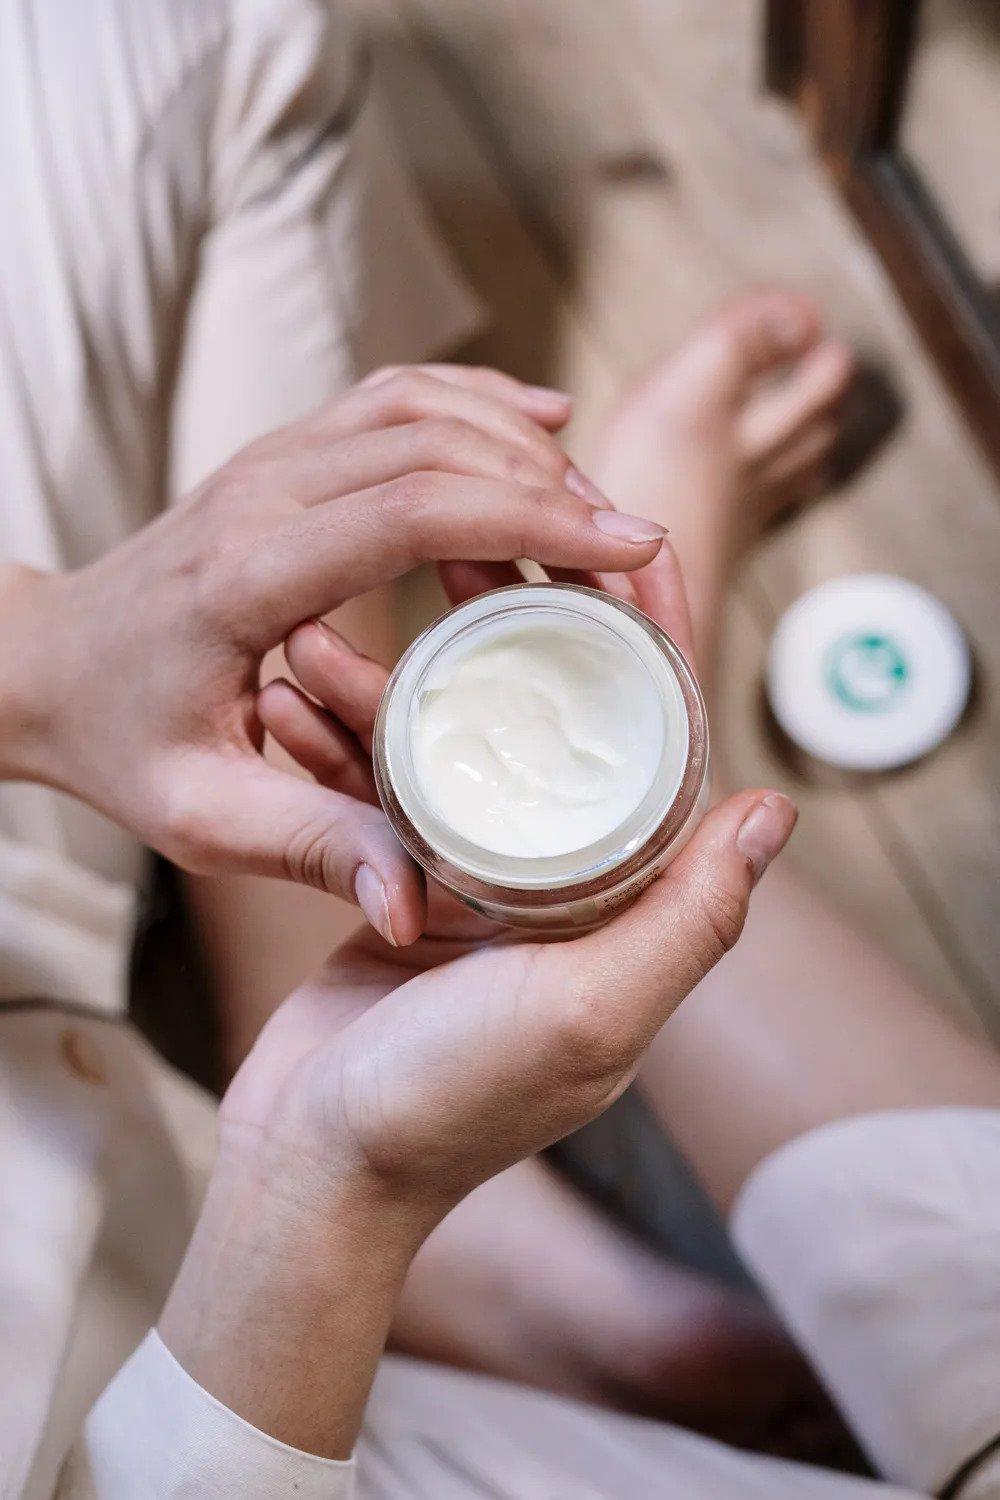 Lựa chọn sản phẩm kem dưỡng trắng uy tín là vô cùng quan trọng để đảm bảo da được dưỡng trắng một cách khỏe mạnh (Nguồn: cottonbro).